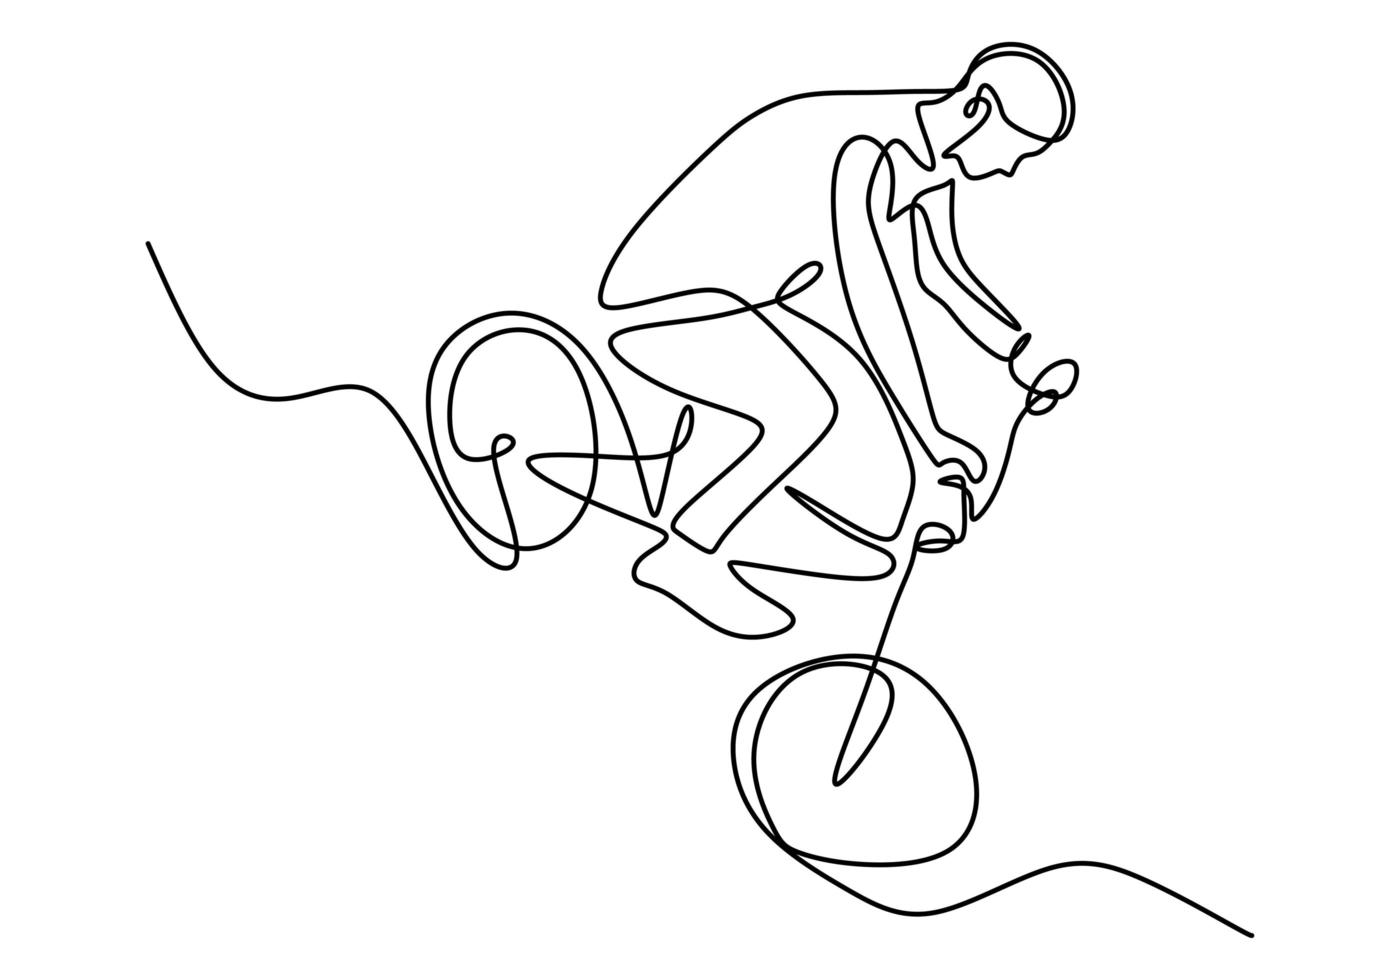 dessin de ligne continue unique de jeune cycliste montrent un truc risqué extrême de style libre. vecteur